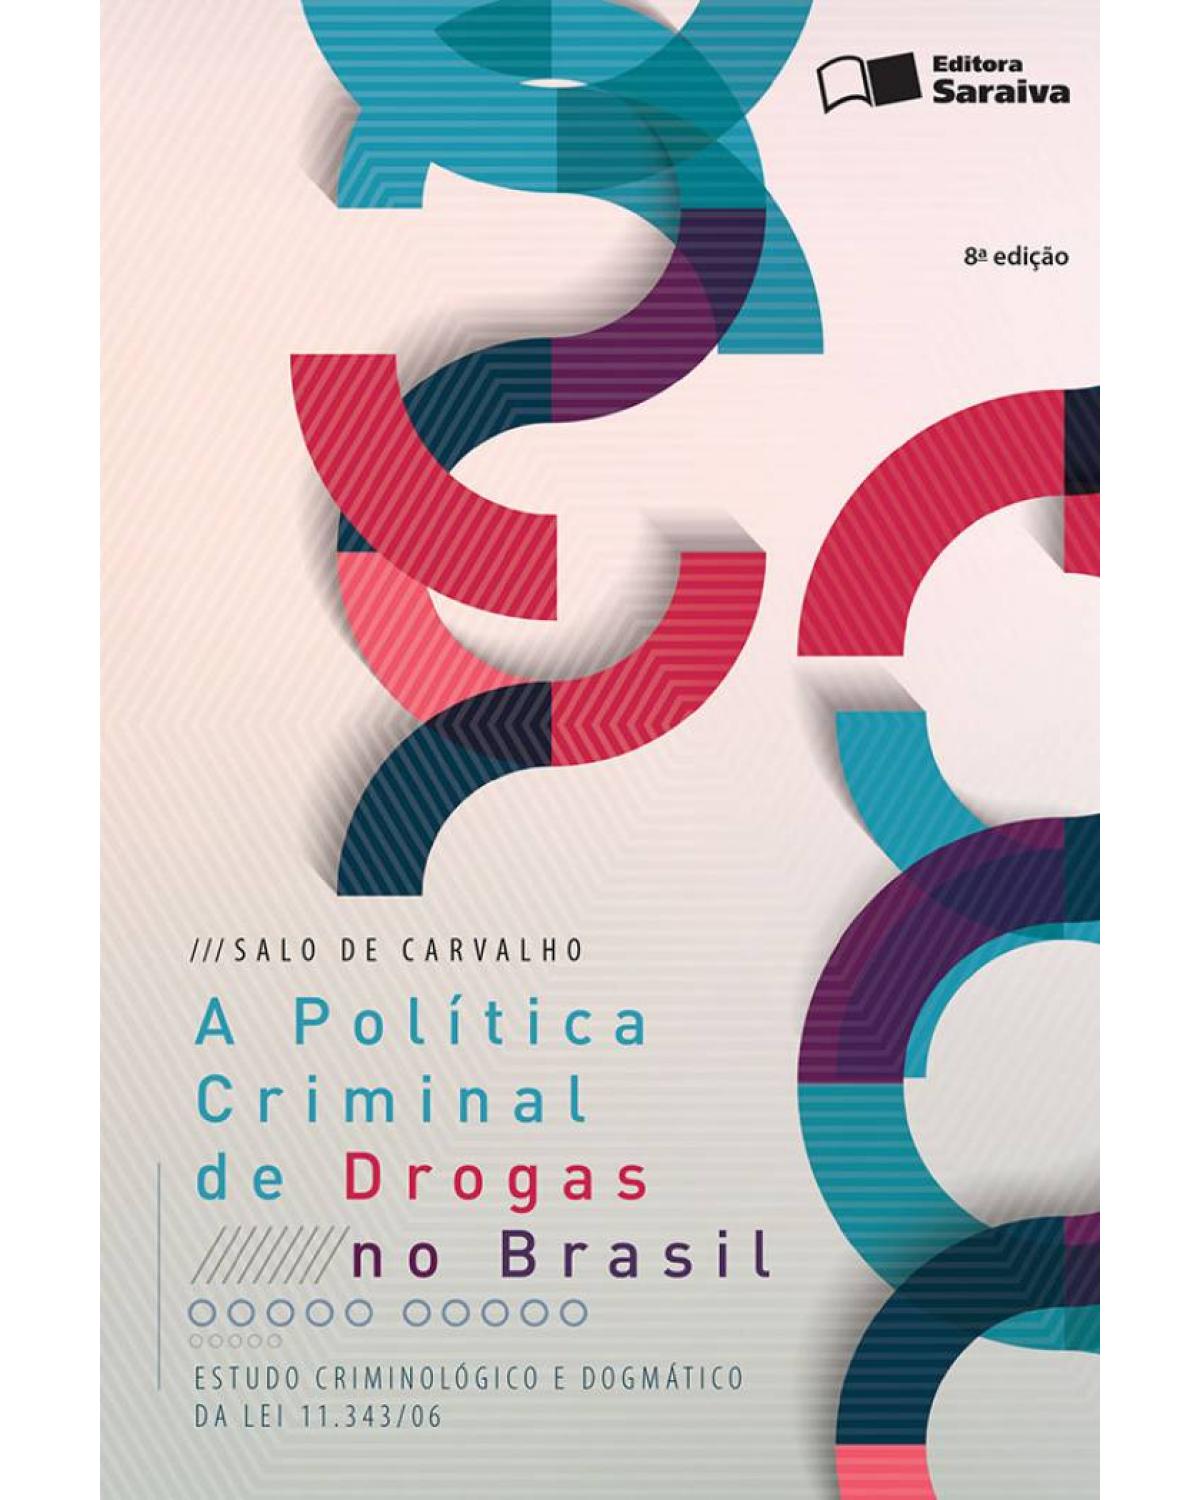 A política criminal de drogas no Brasil - estudo criminológico e dogmático da lei 11.343/06 - 8ª Edição | 2016